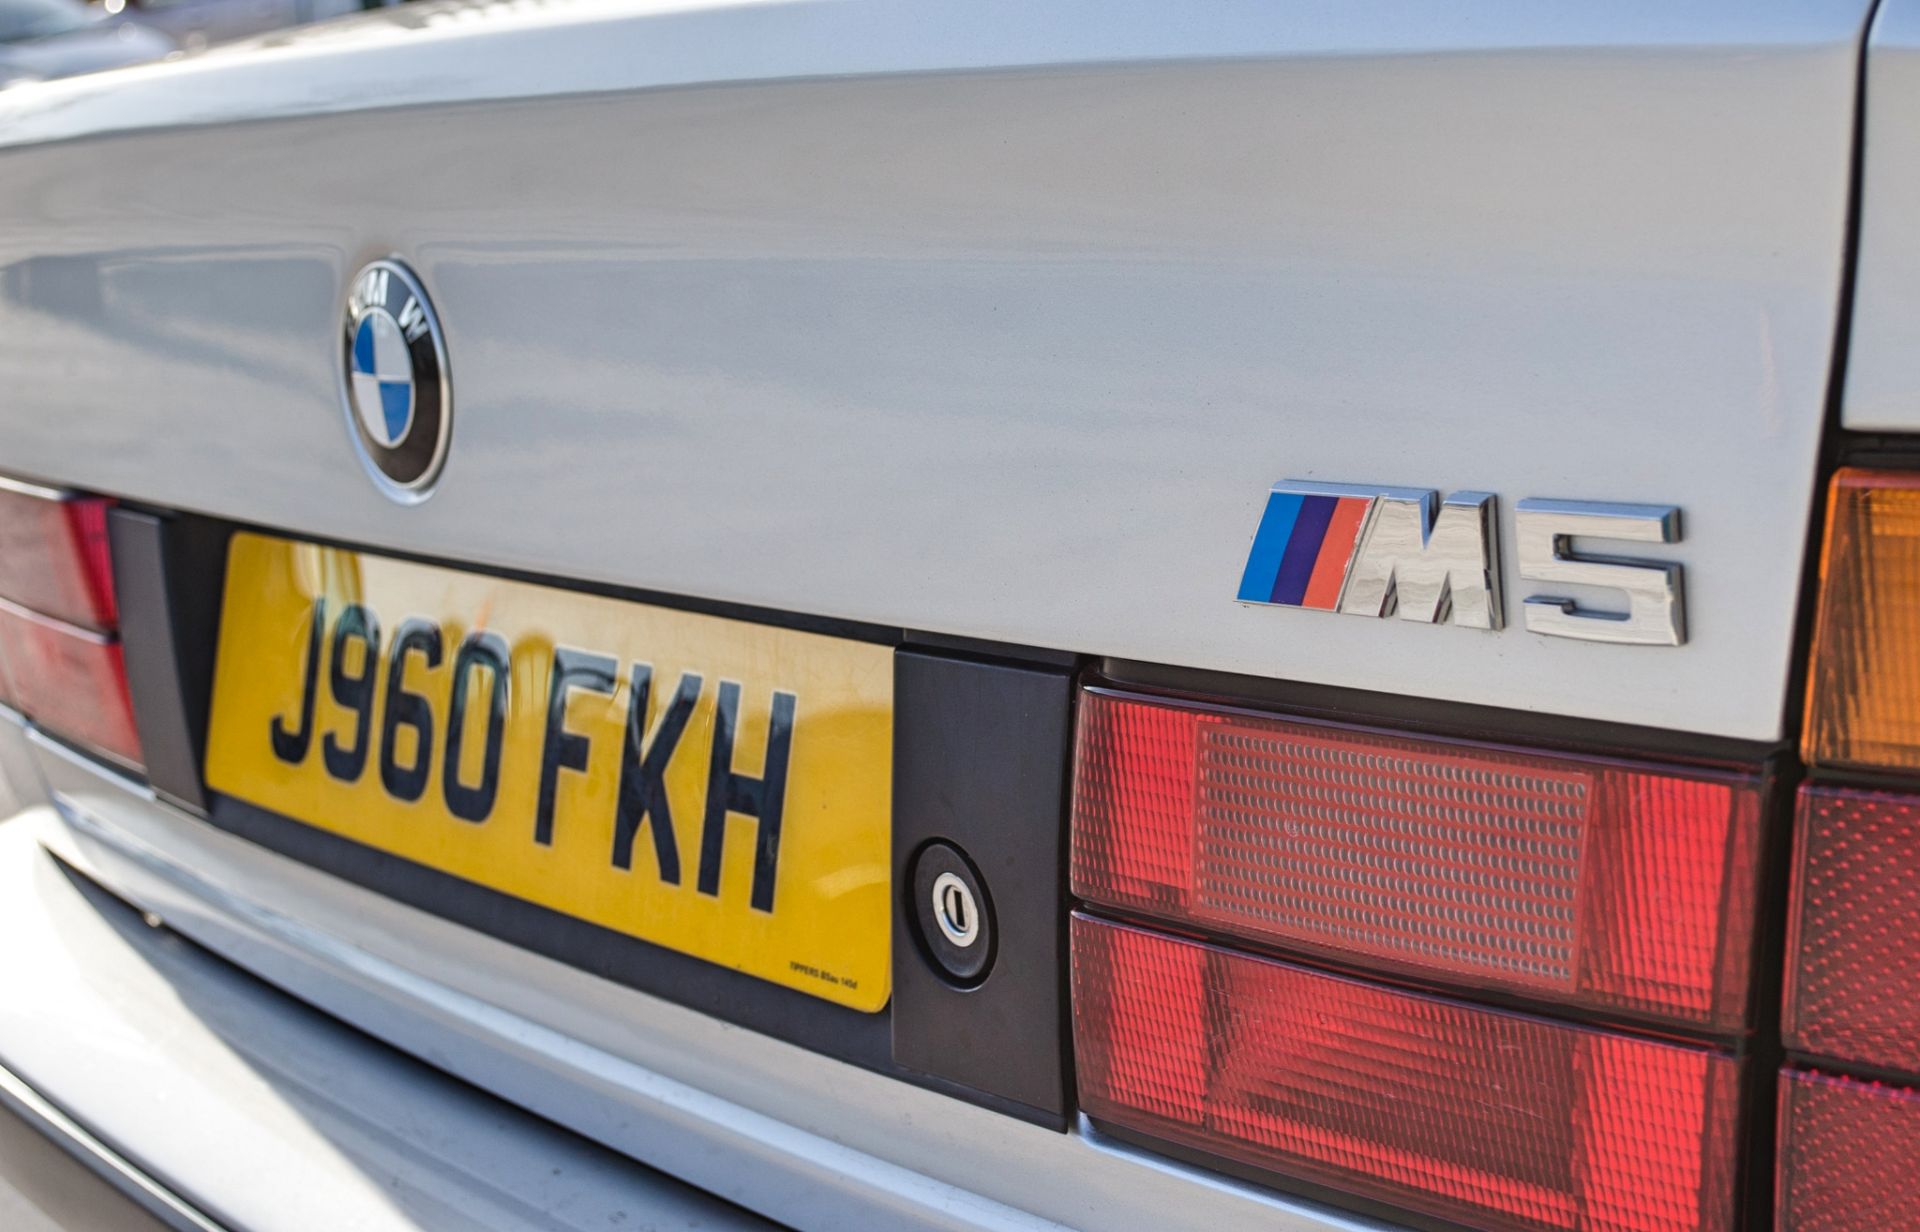 1991 BMW M5 E34 3.6 litre 4 door saloon - Image 31 of 59